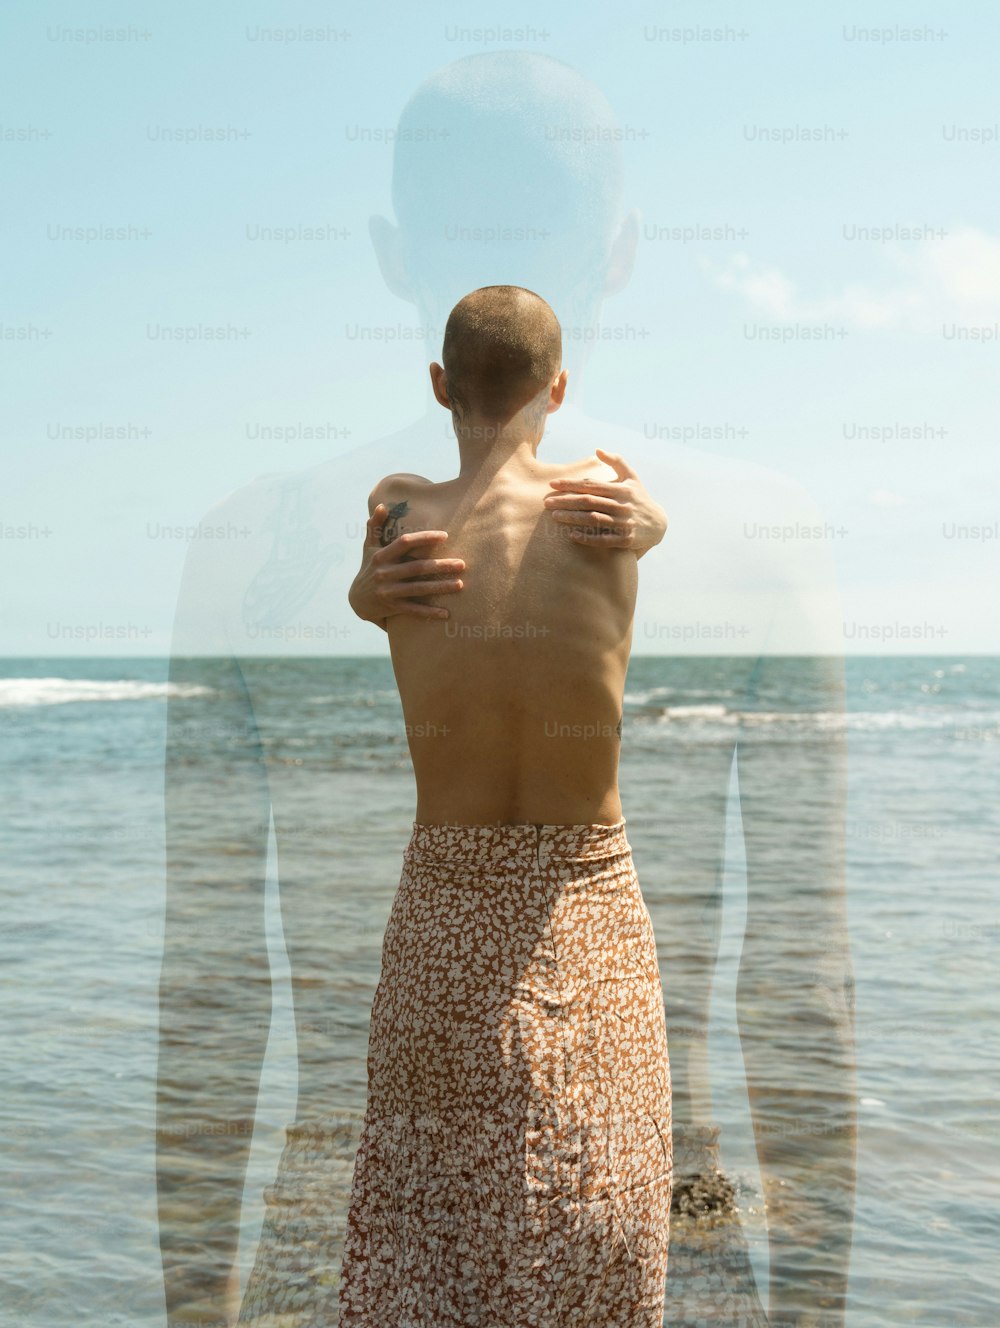 Un uomo in piedi di fronte a uno specchio d'acqua